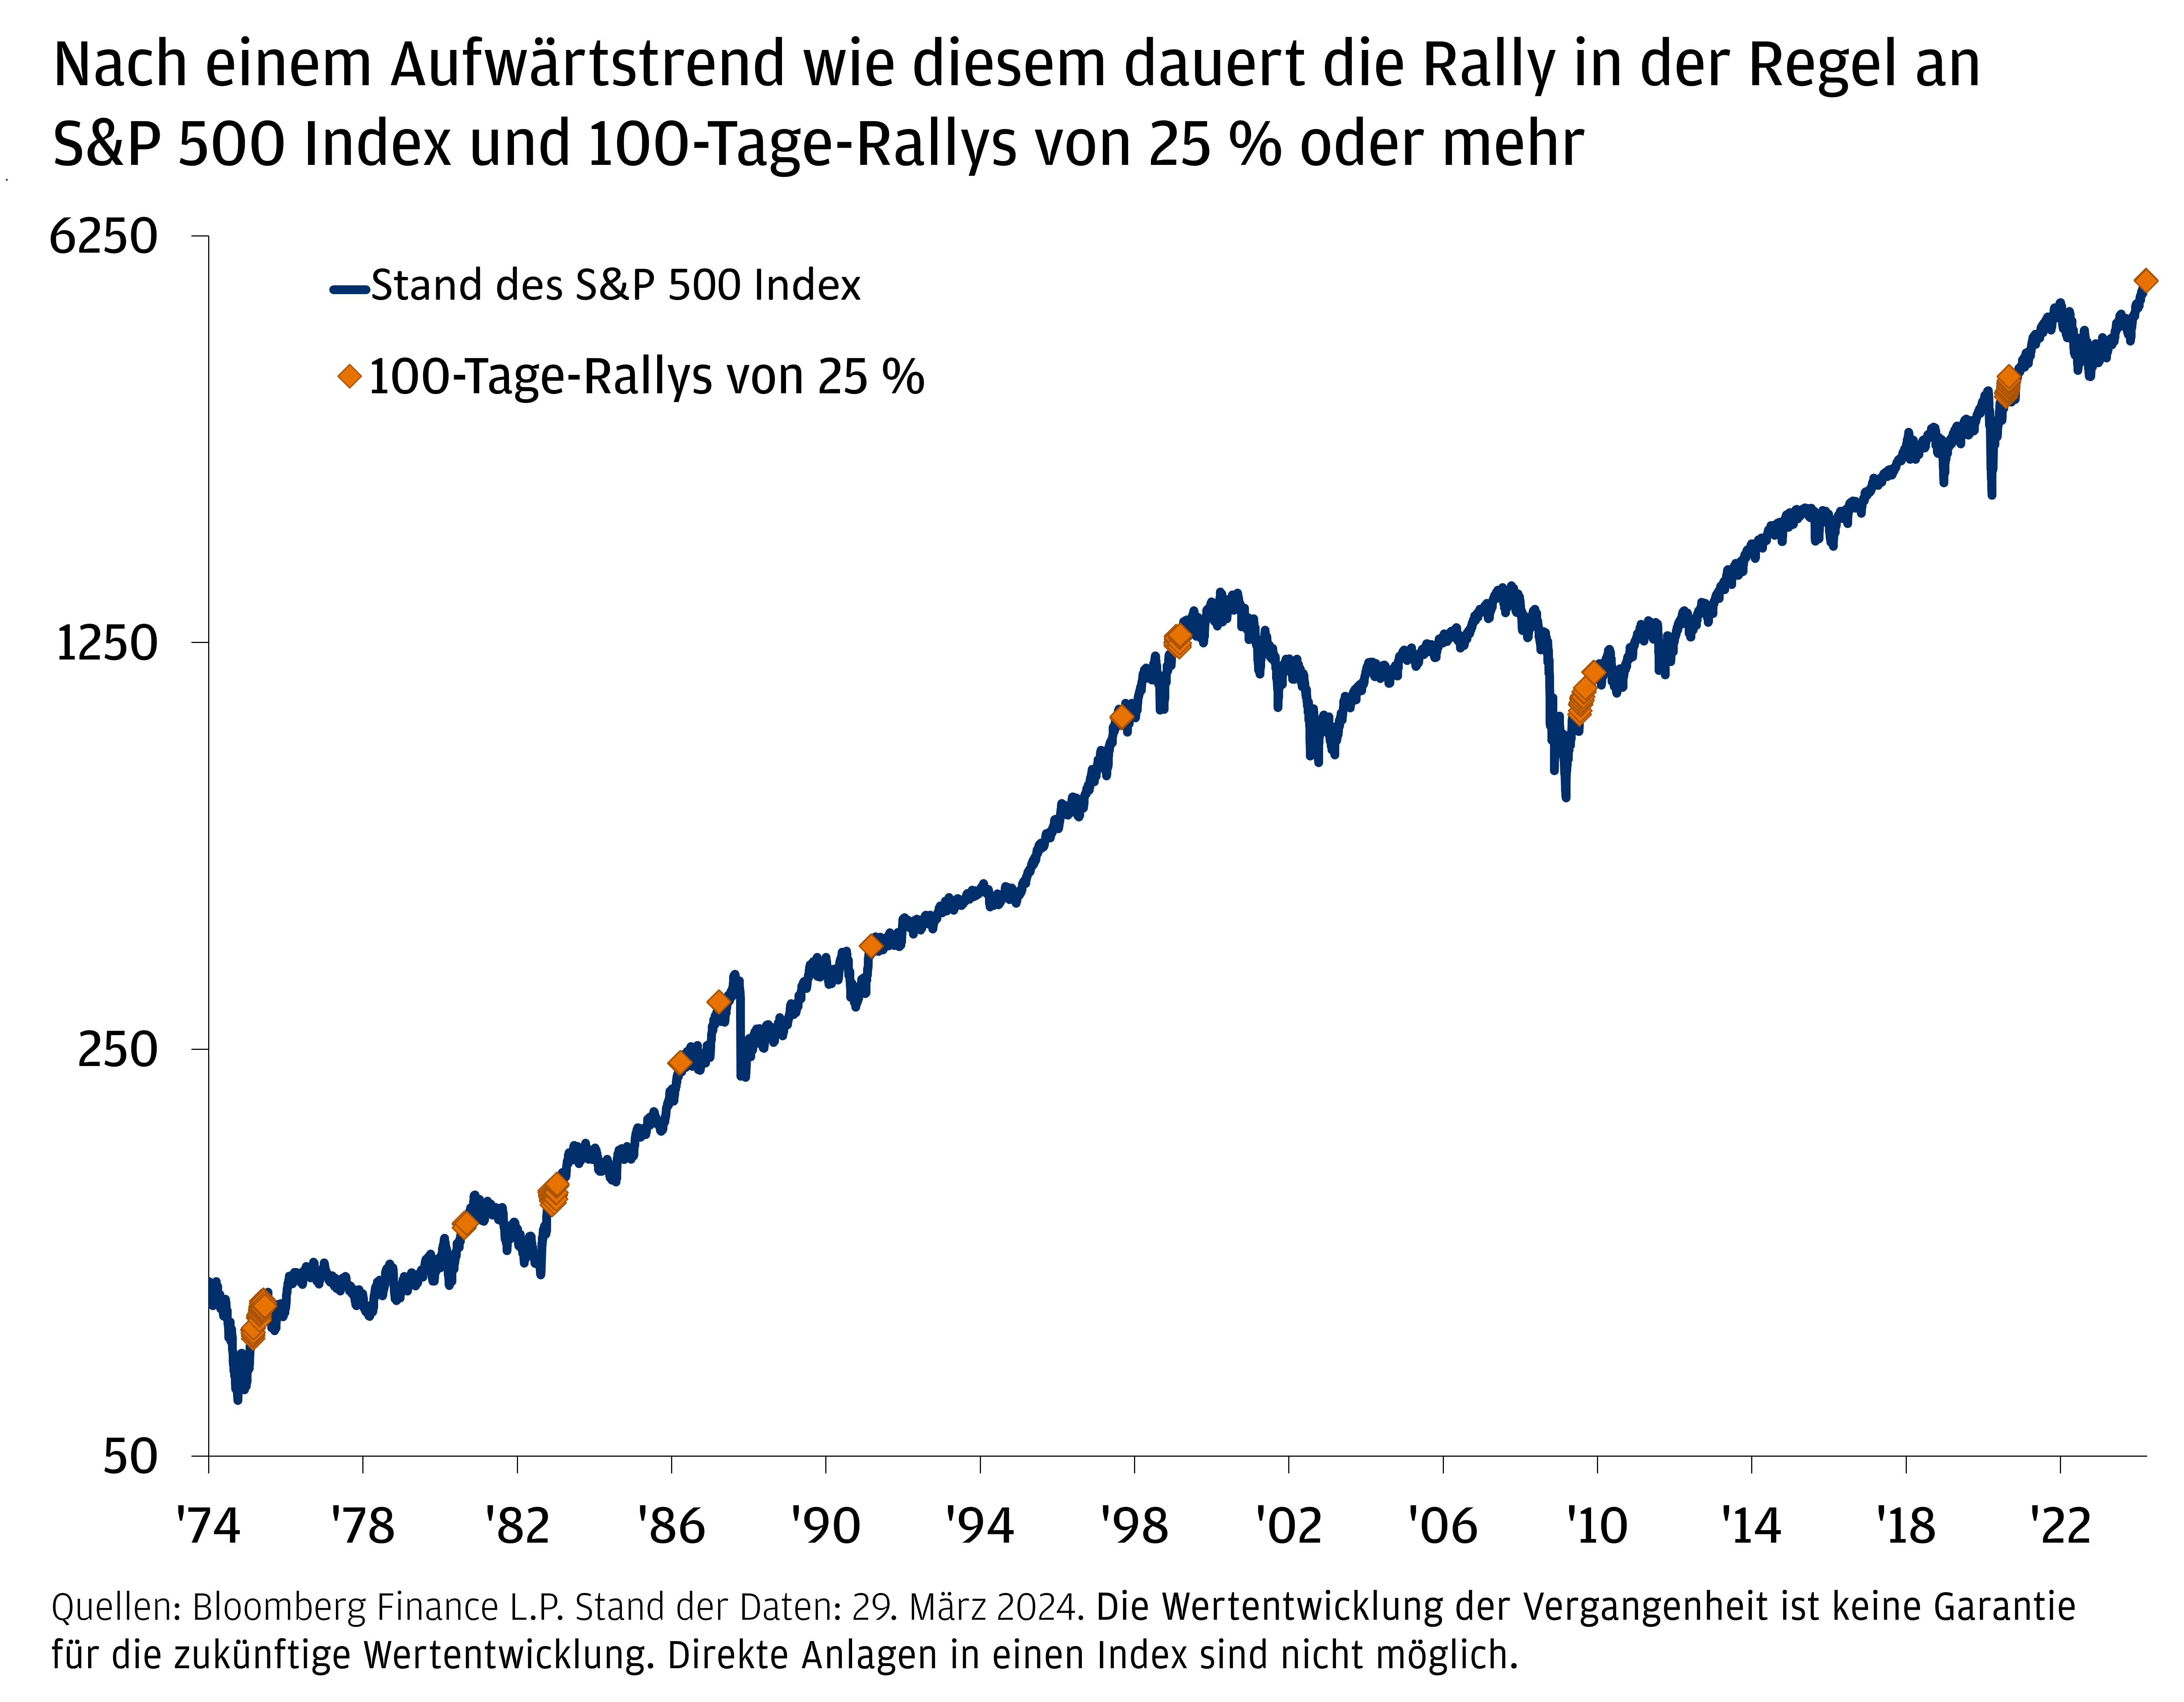 Dieses Diagramm zeigt den Preis des S&P 500 Index sowie 100-tägige Zeiträume, in denen die Aktien um mindestens 25% zulegten. Der Indexpreis beginnt im Januar 1974 bei 93,42 und steigt im Oktober 1987 auf 314,16. Im Dezember 1987 fällt er auf 223,92 und steigt im März 2000 auf 1.500,64. Im Oktober 2002 fällt er erneut auf 785,28 und erholt sich im Oktober 2007 auf 1.535,28. Danach sinkt er auf 676,53 im März 2009, steigt auf 3.316,81 im Januar 2020 und fällt auf 2.237,4 im März 2020. Dann steigt er wieder auf 4.791,19 im Dezember 2021, fällt auf 3.585,62 im September 2022 und steigt auf 5.243,77 im März 2024. 